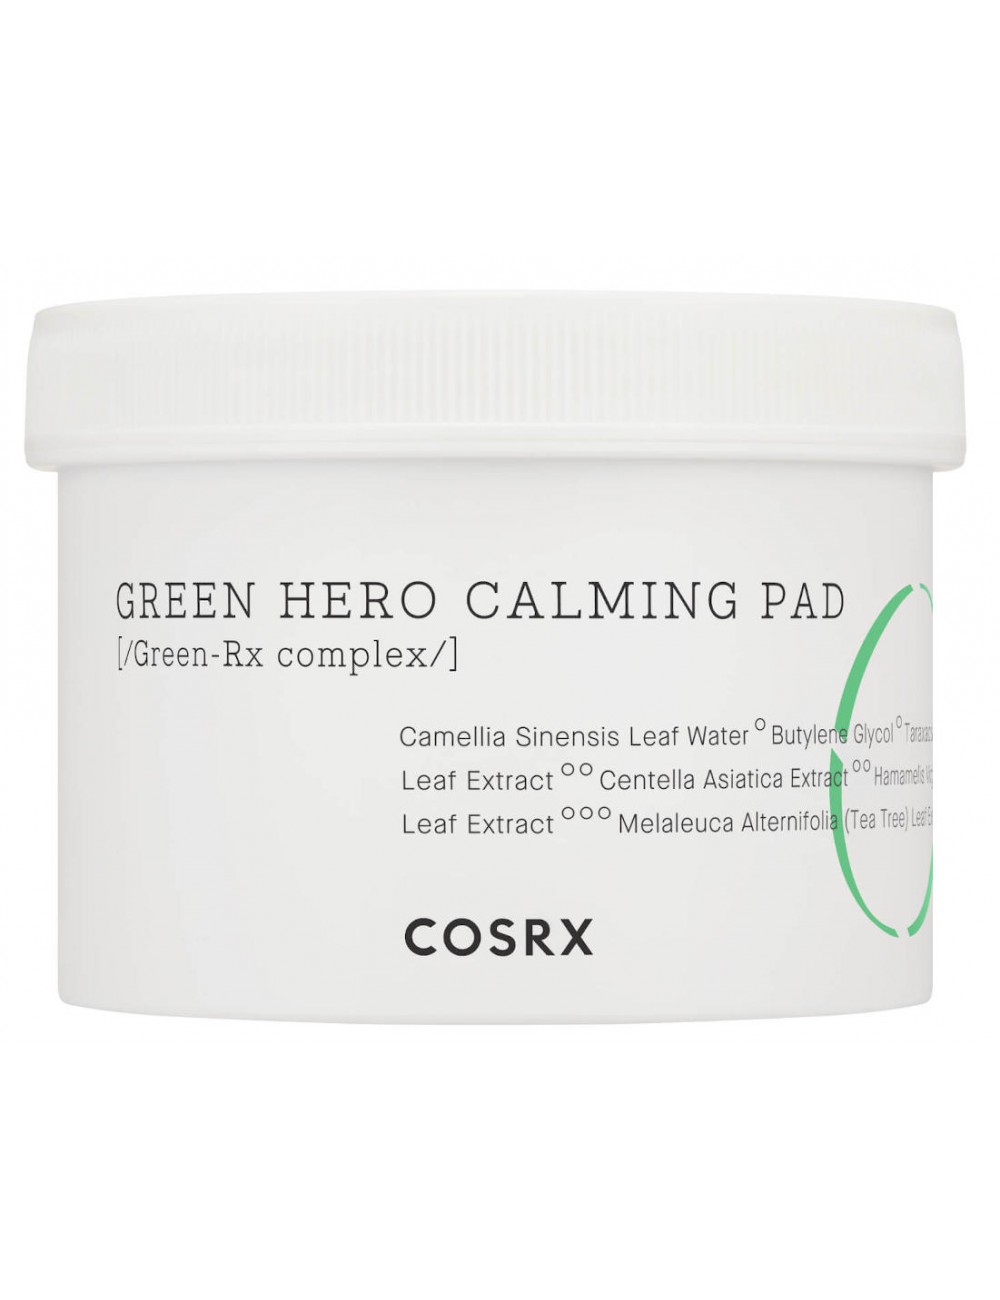 Cosmética Coreana al mejor precio: Algodones Exfoliantes COSRX Green Hero Calming Pad de Cosrx en Skin Thinks - Piel Seca